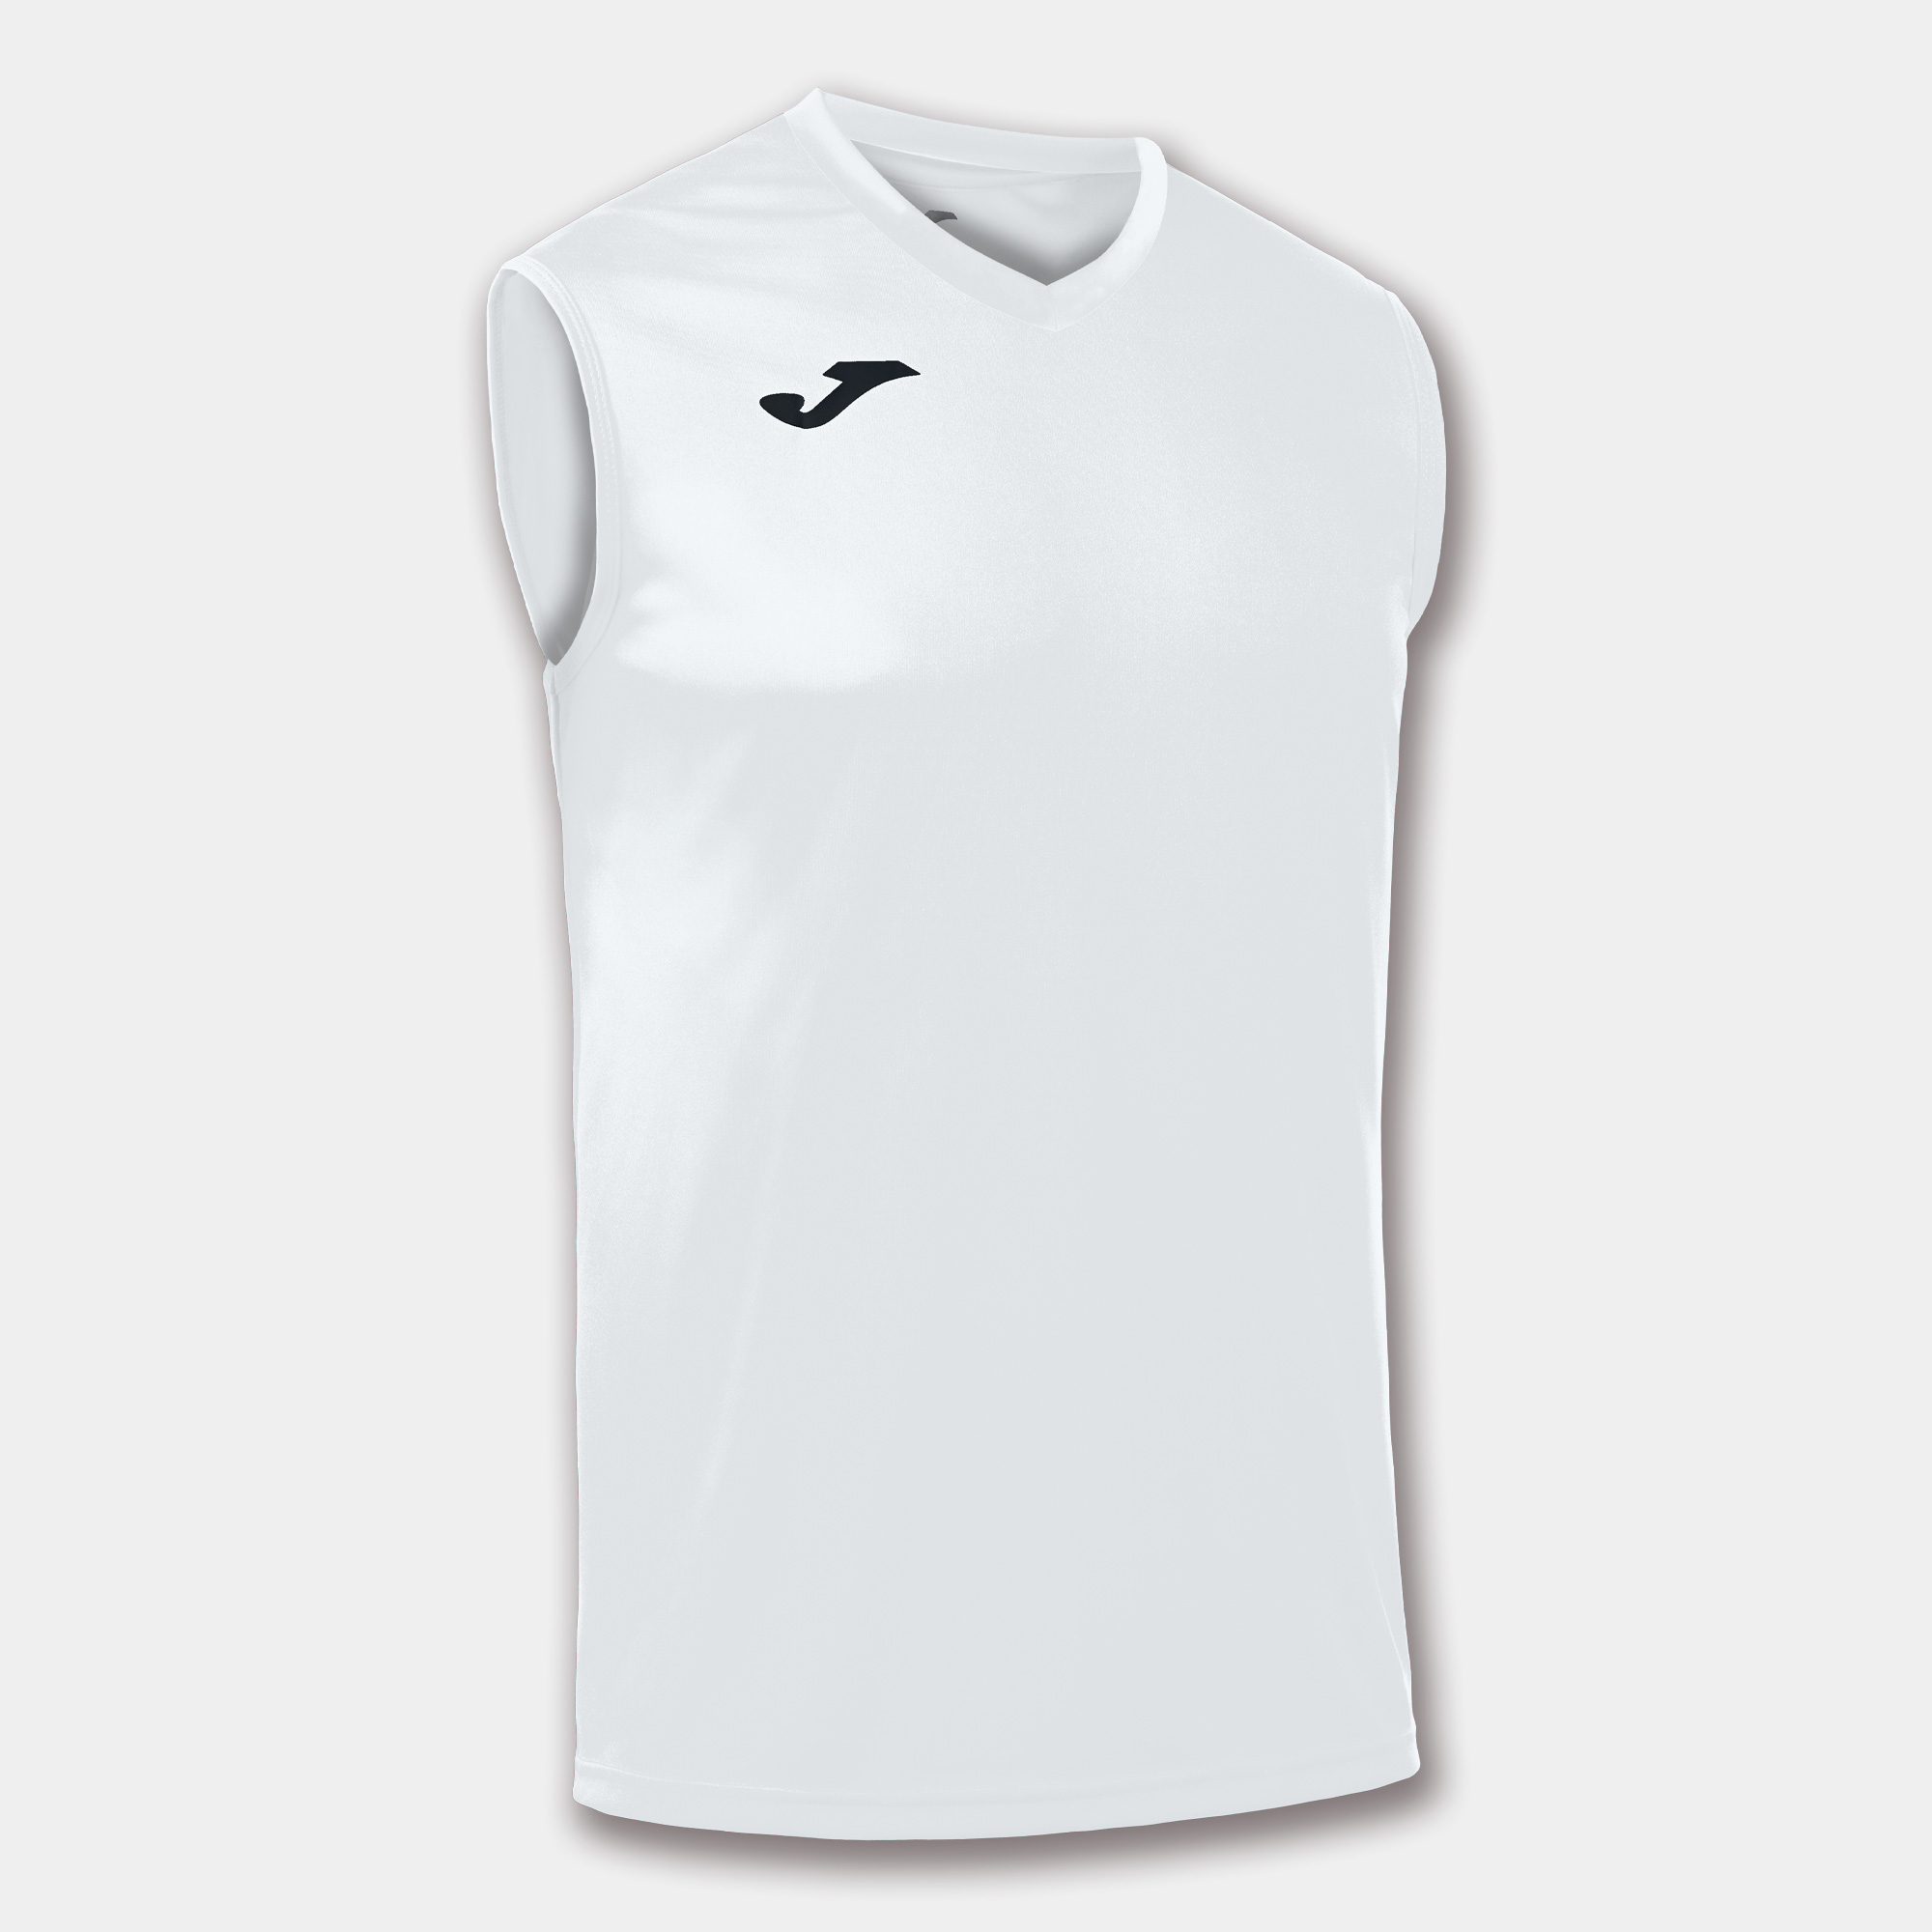 Joma Combi Camiseta Tenis Hombre - White/Black